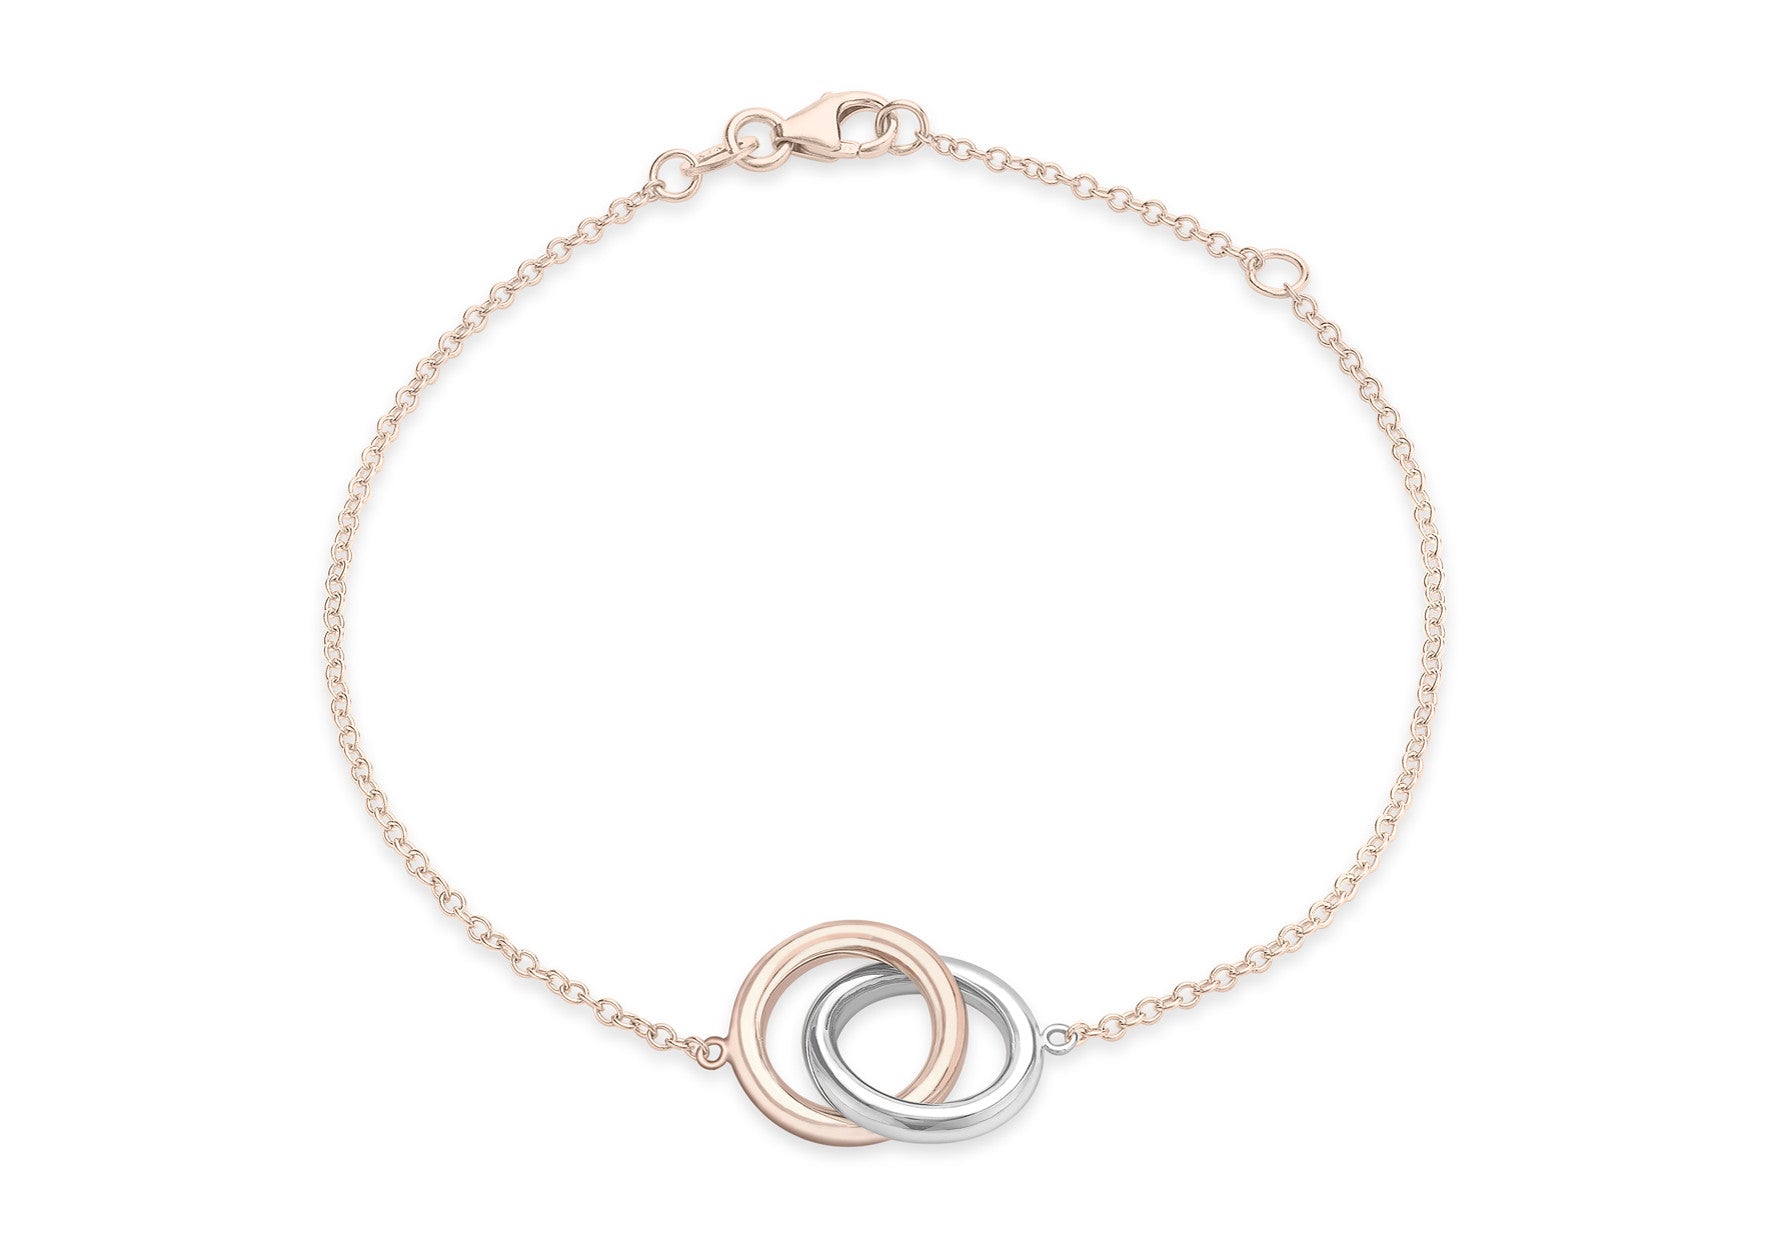 9ct Rose and White Gold Interlocking Ring Bracelet